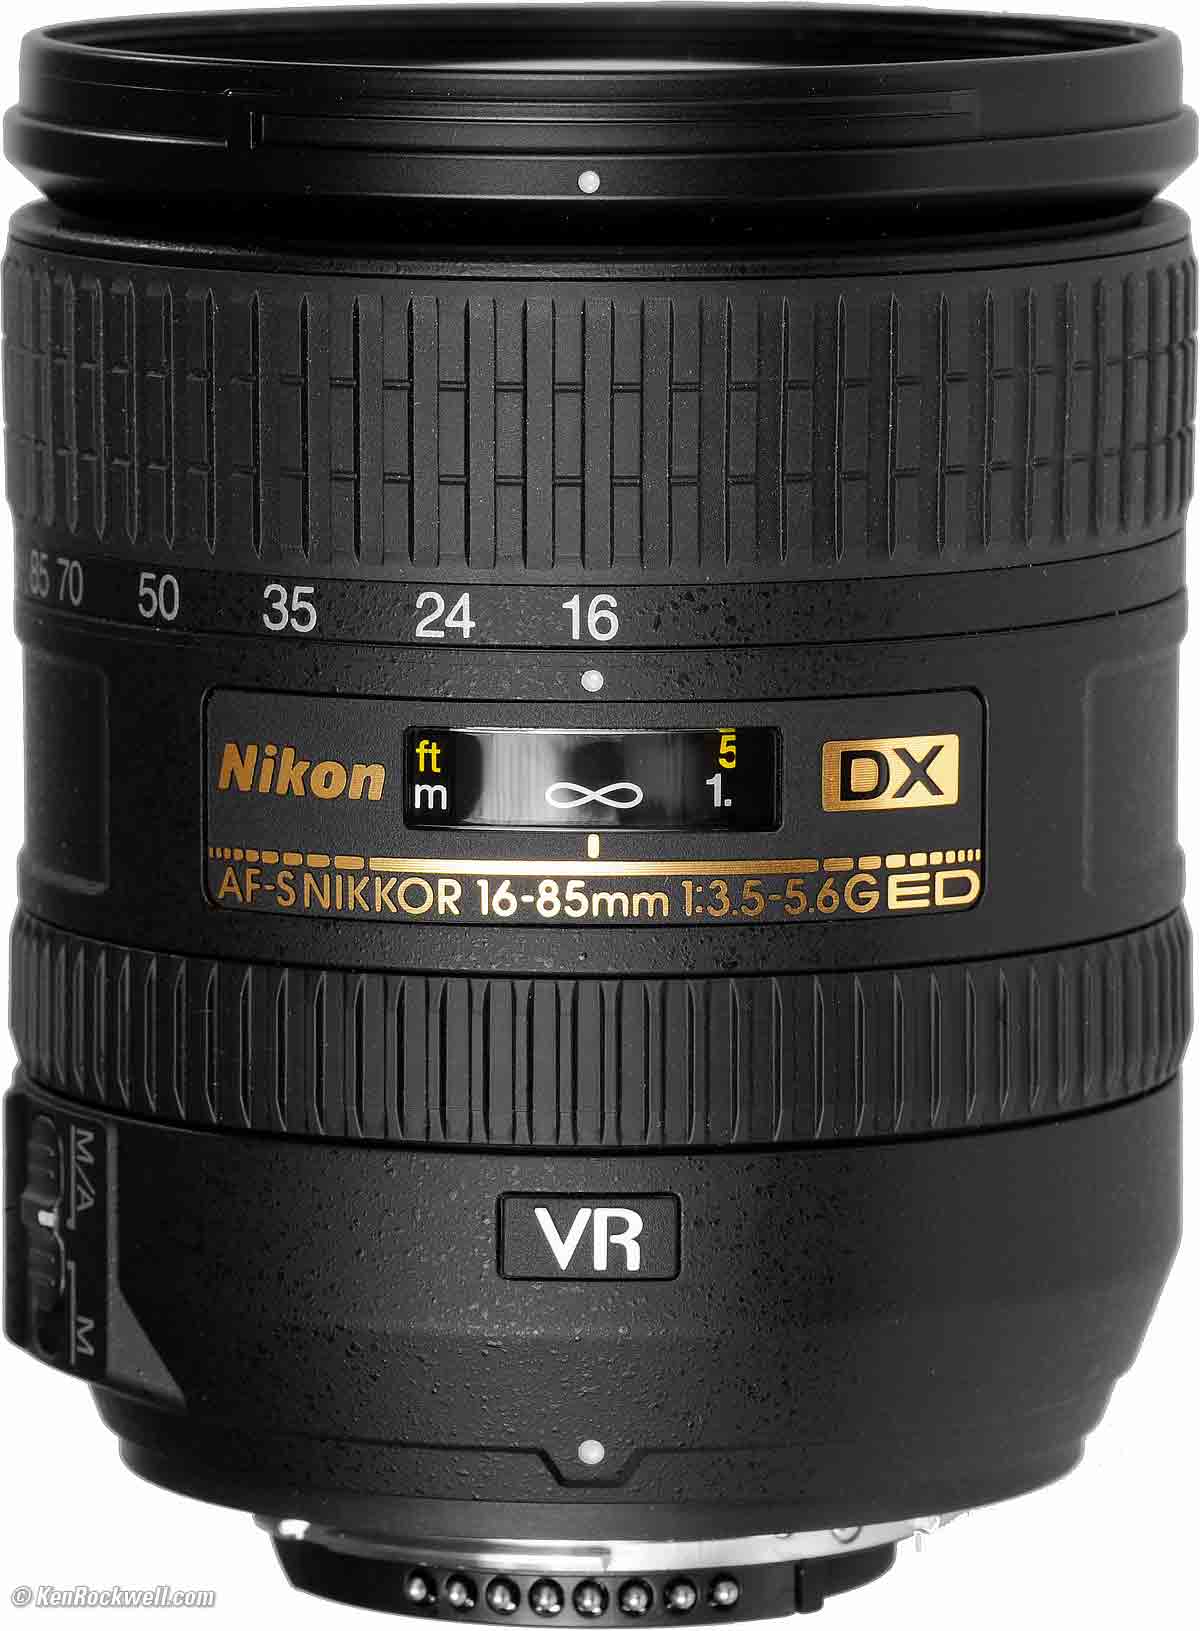 Nikon 16-85mm Review